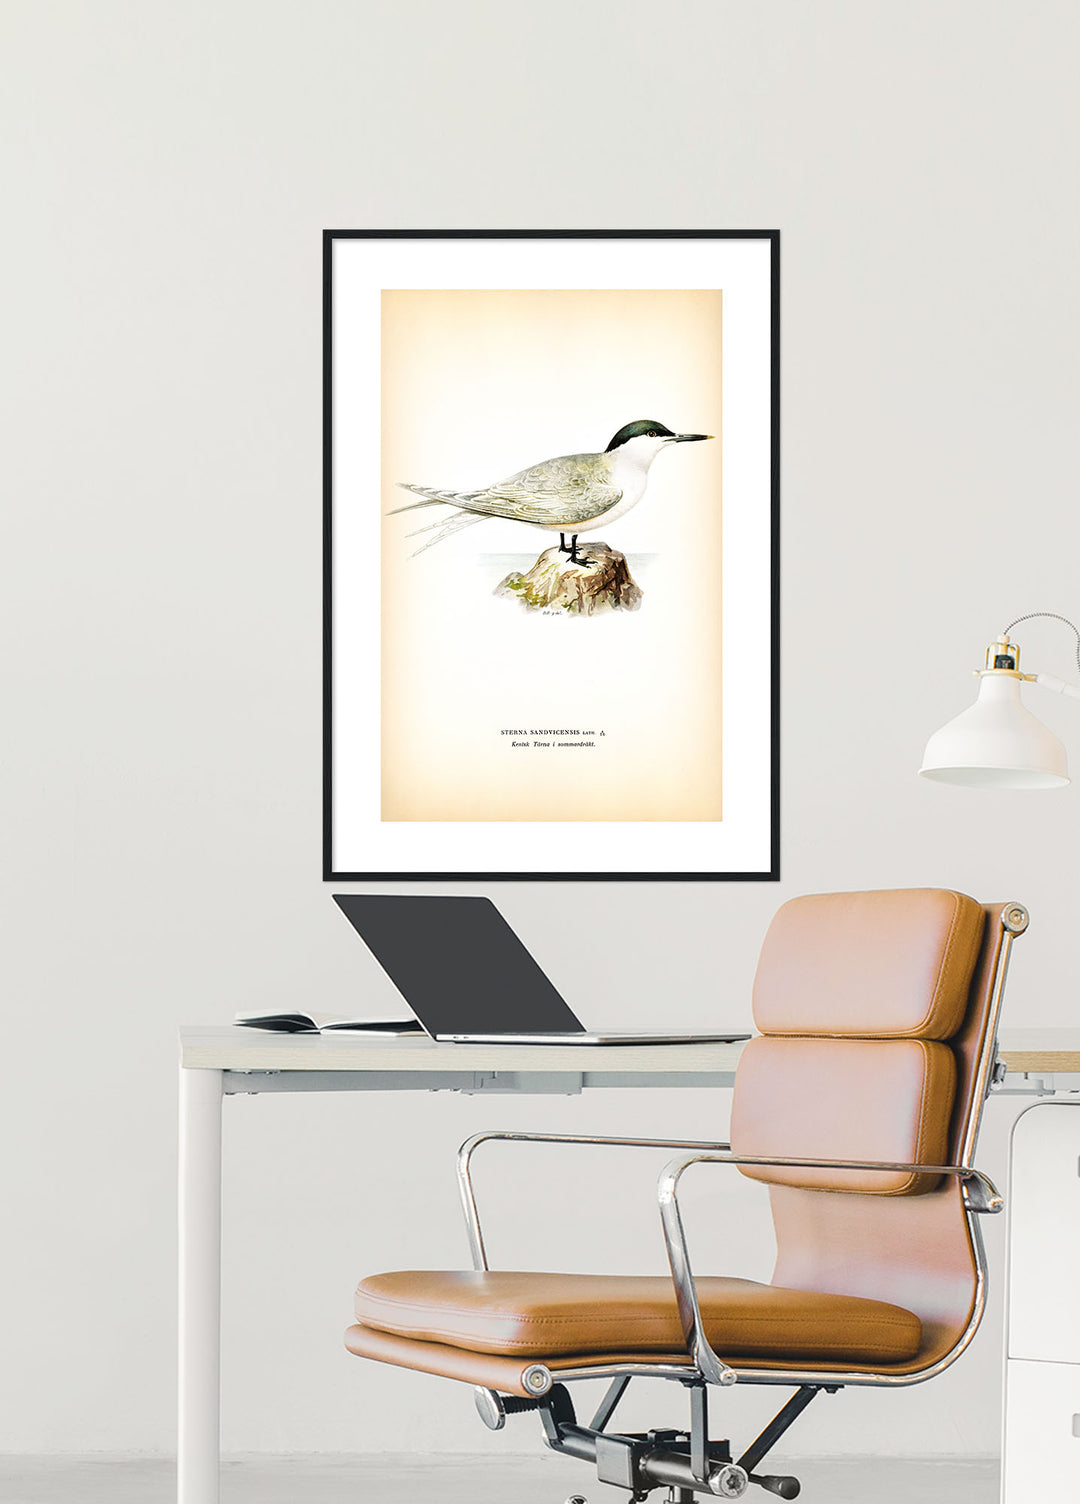 Fågeln Kentsk tärna på klassisk vintage poster/affisch